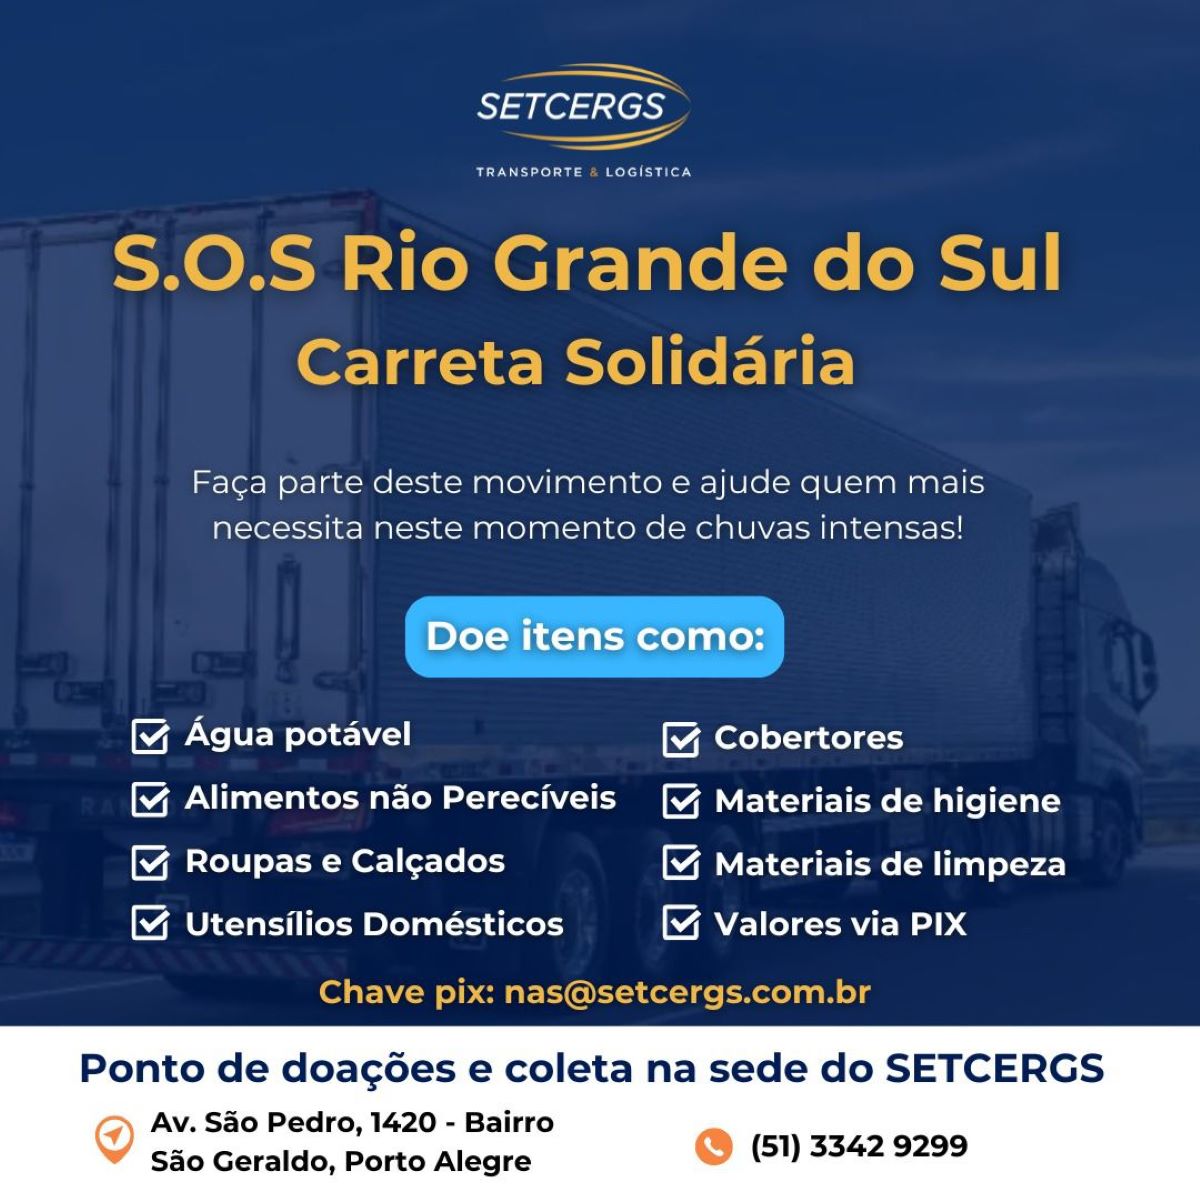 Campanha “SOS Rio Grande do Sul – Carreta Solidária” em apoio às vítimas das enchentes